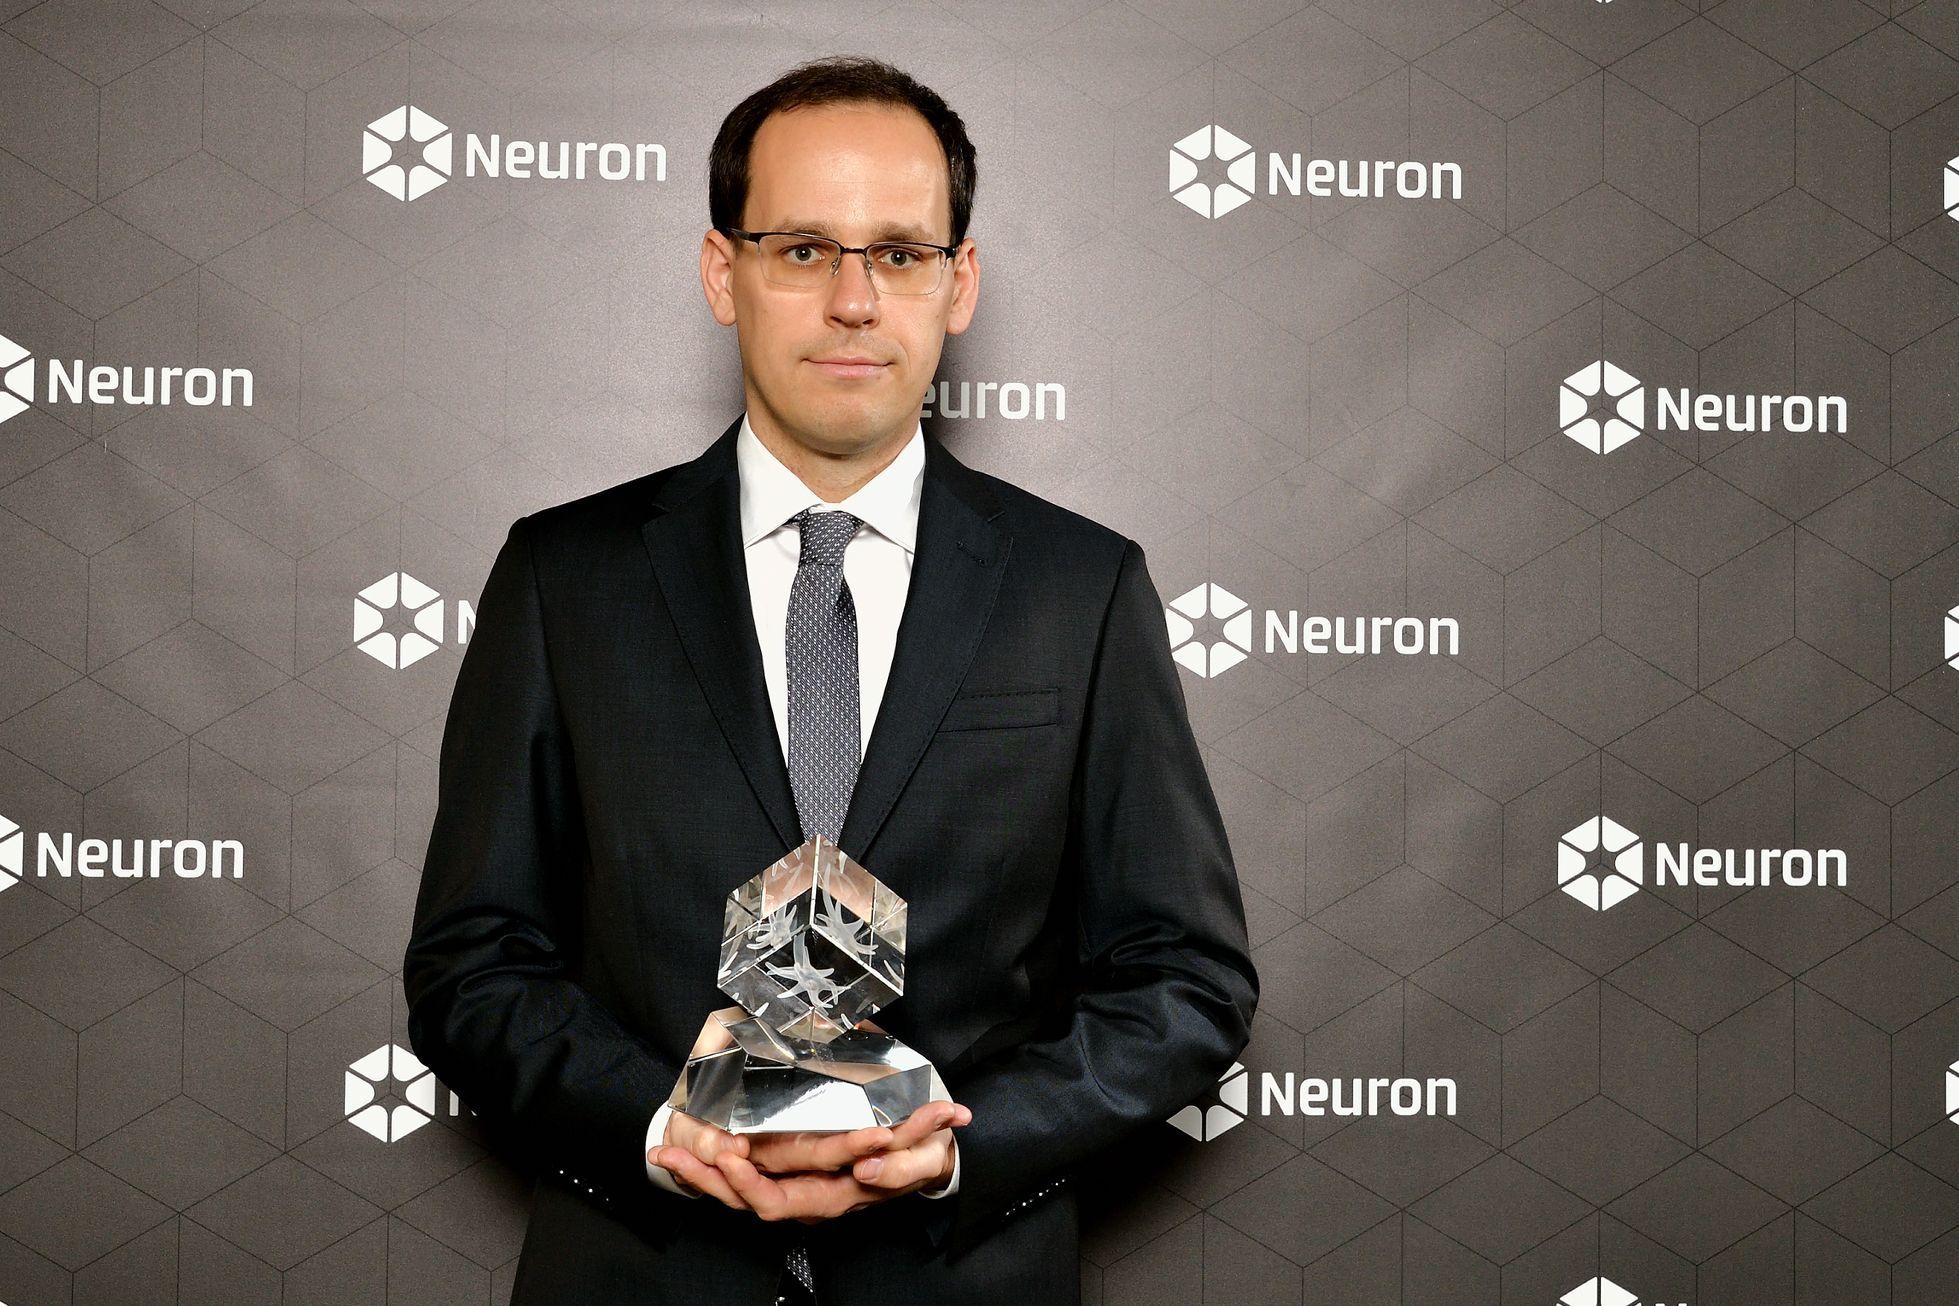 Ceny Neuron 2019 - fyzik Ondřej Pejcha